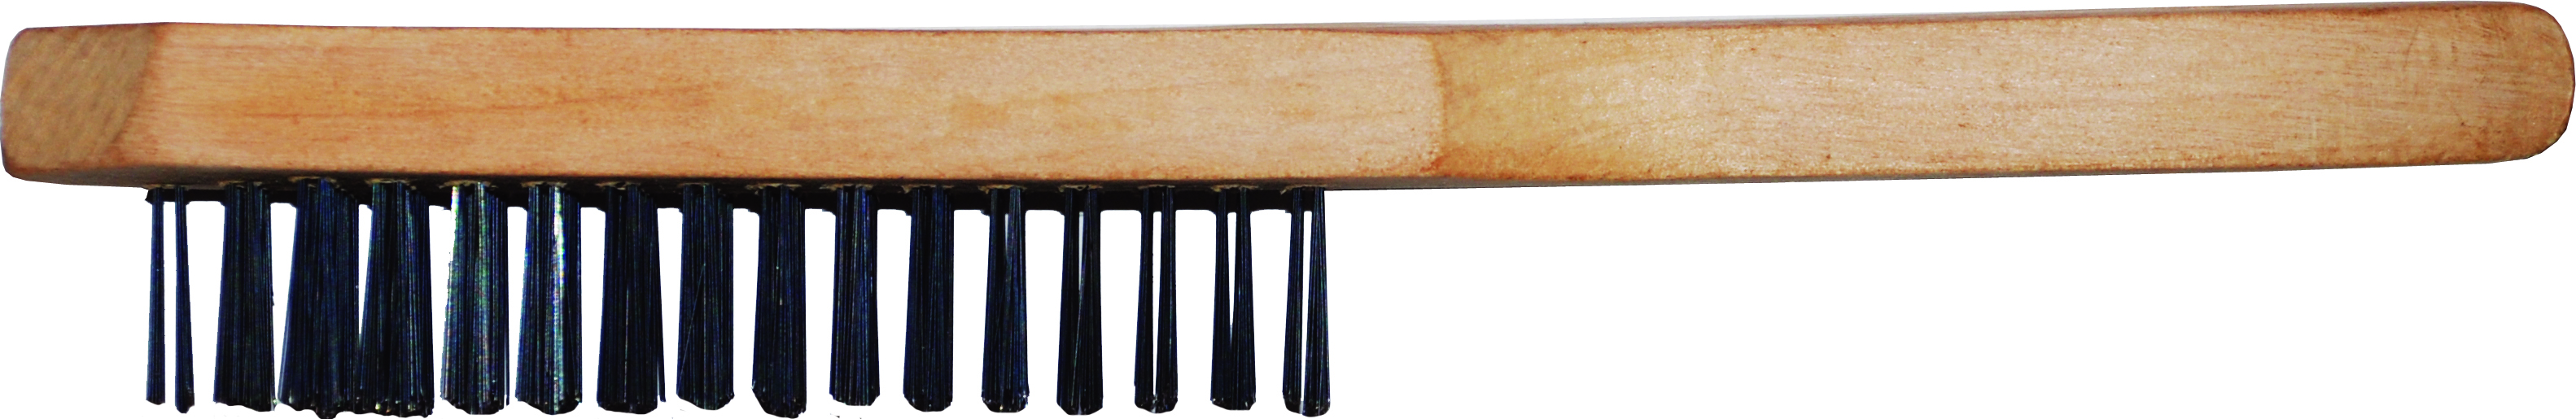 Ручная щетка с деревянной  ручкой